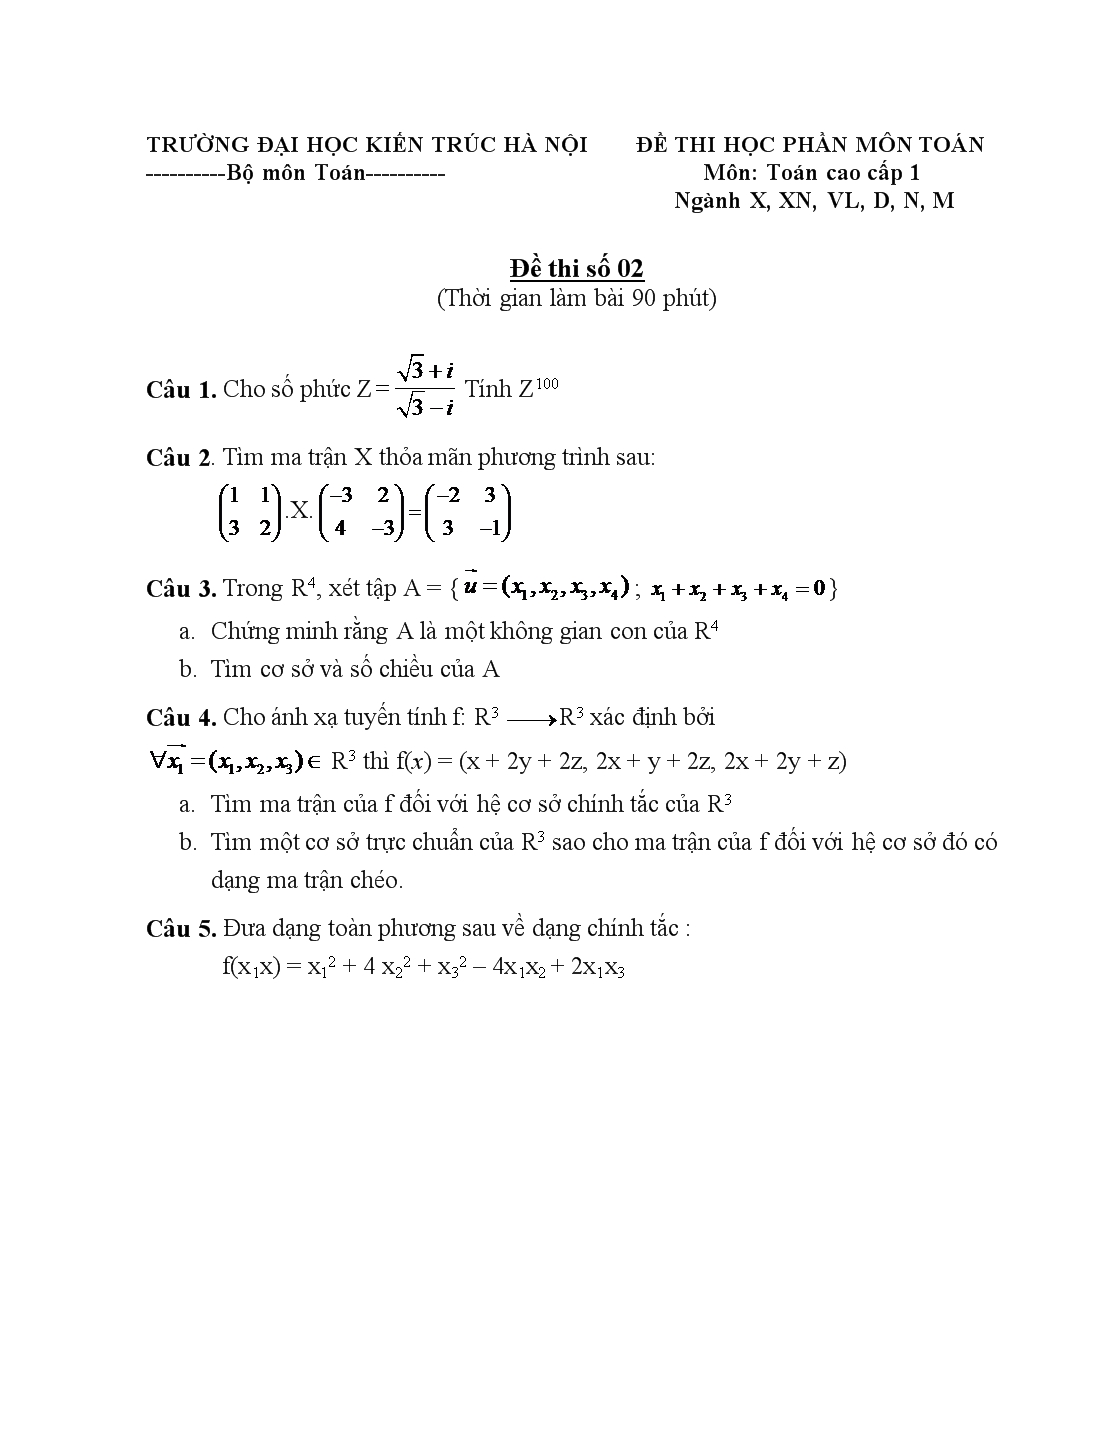 Đề thi học phần môn toán cao cấp 1 trang 2